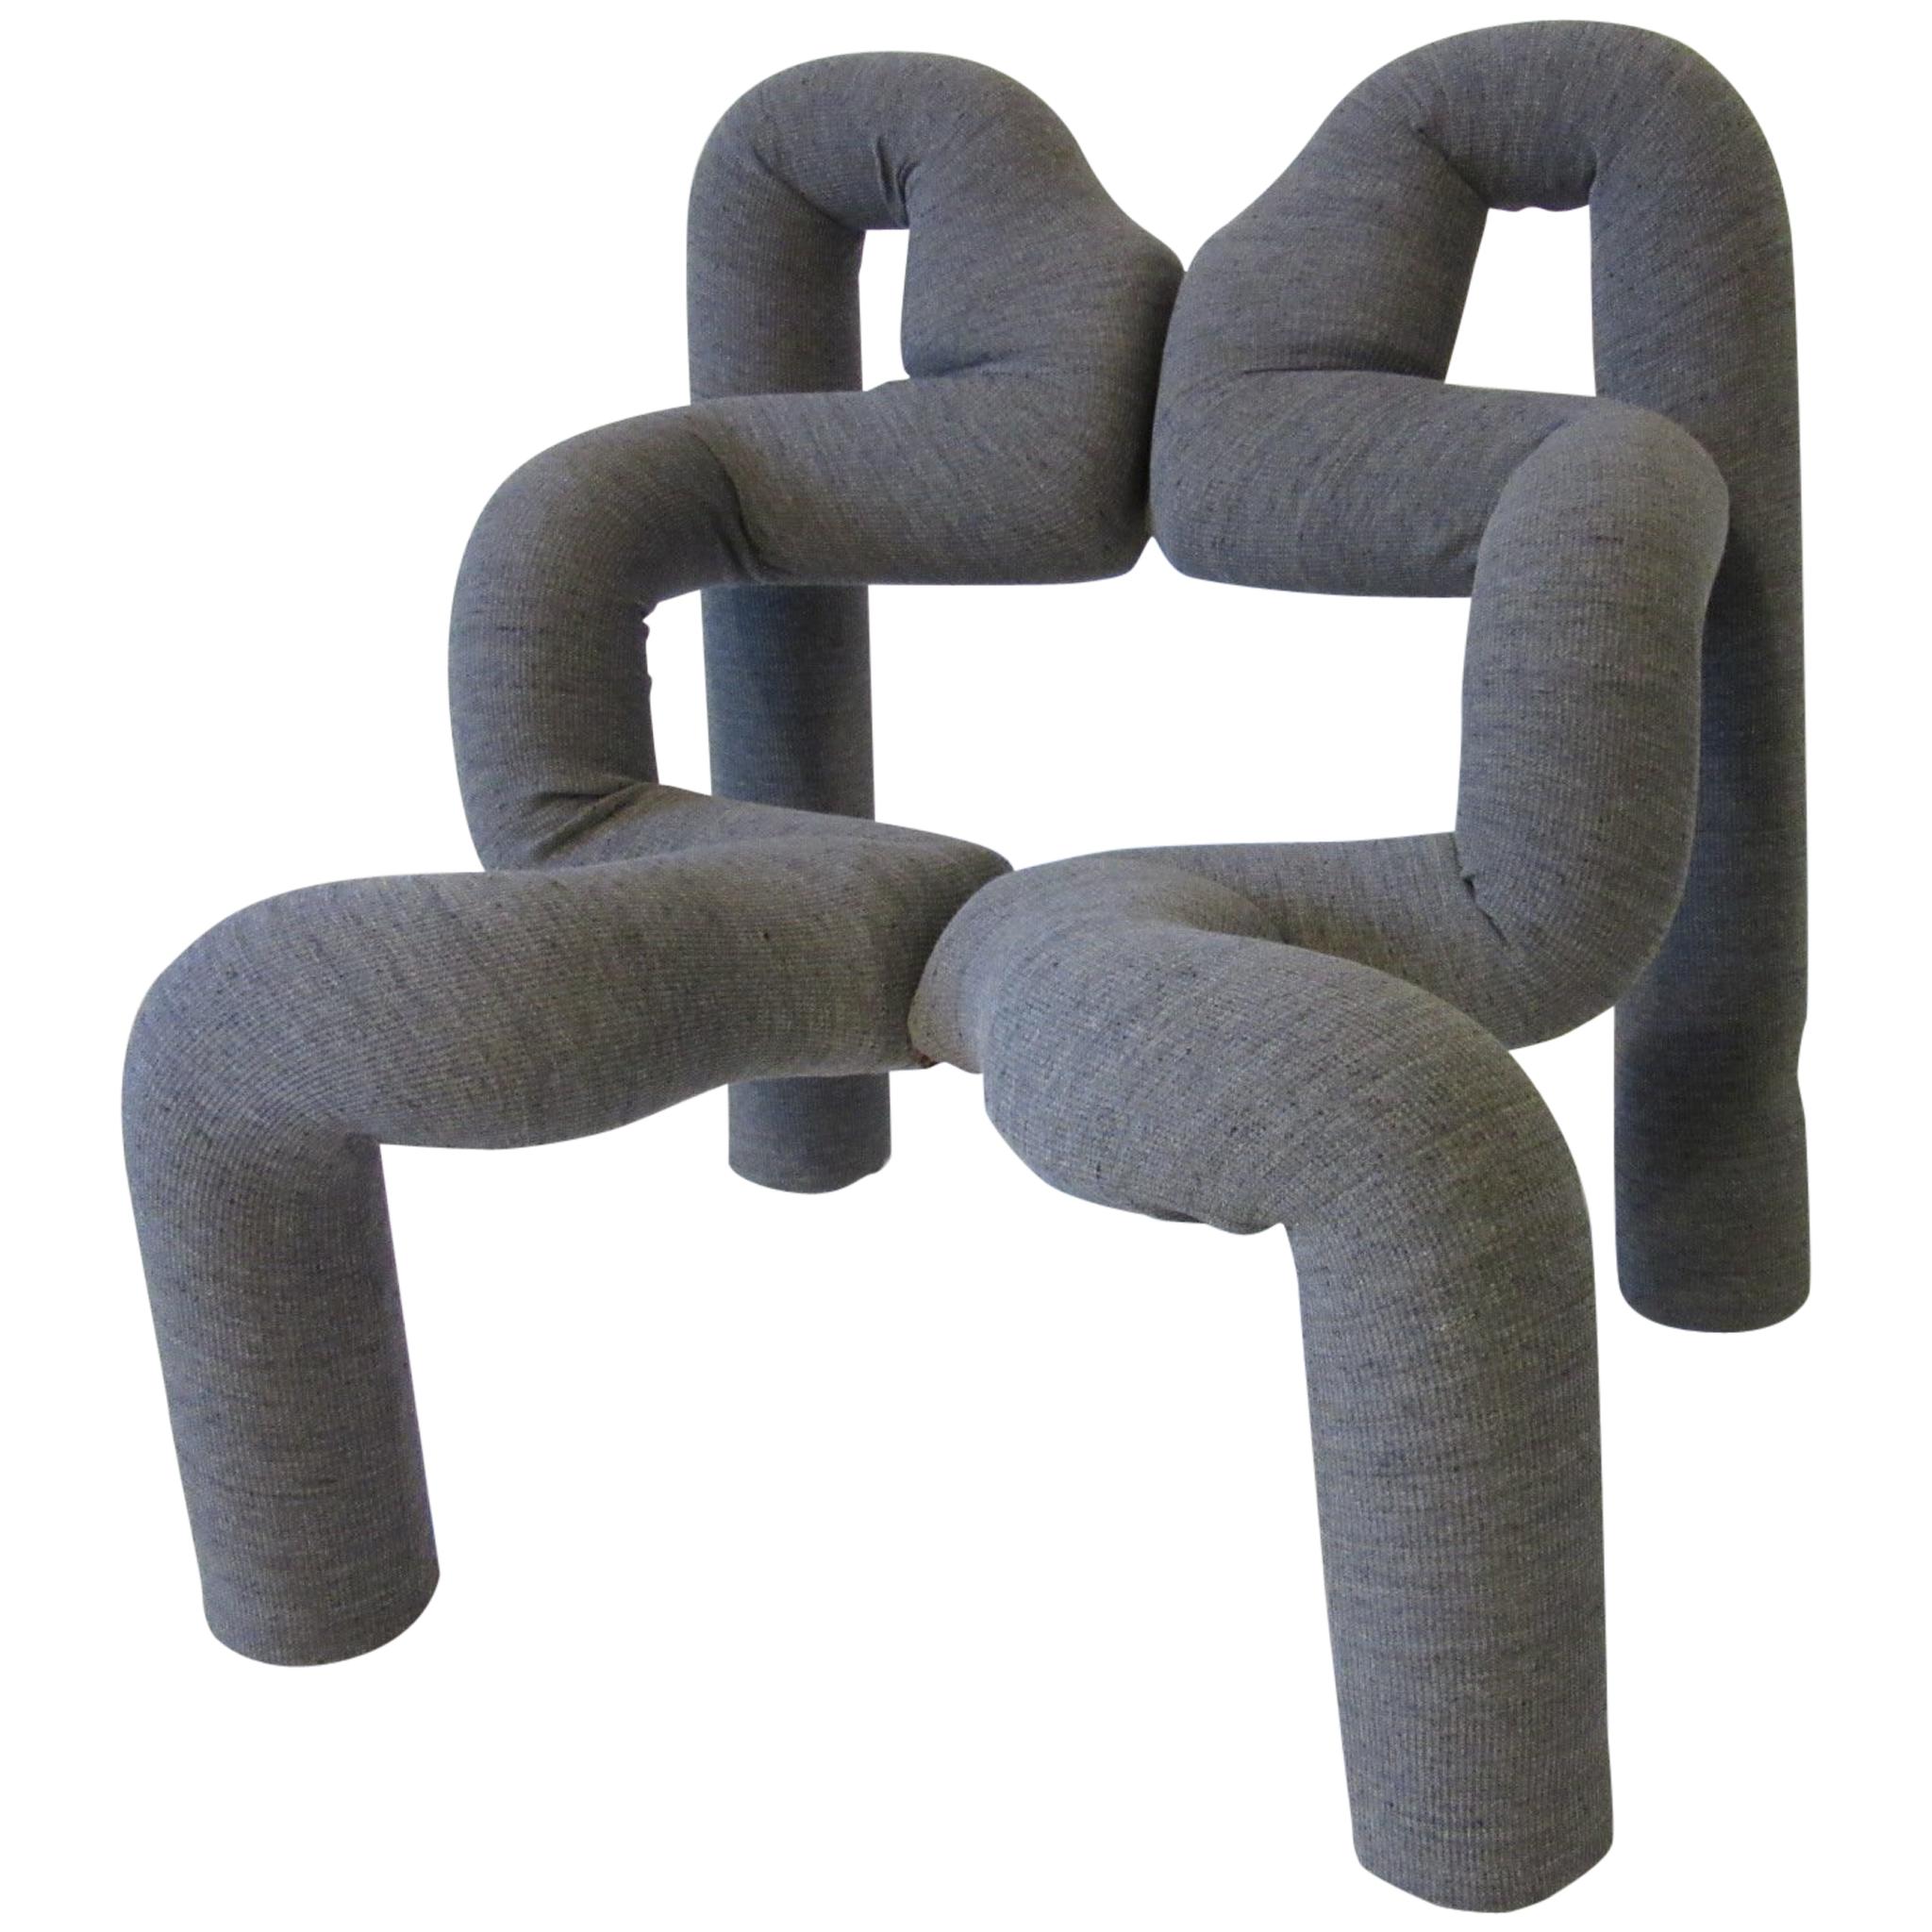 Ekstrem Sculptural Chair by Terje Ekstrom Made in Norway